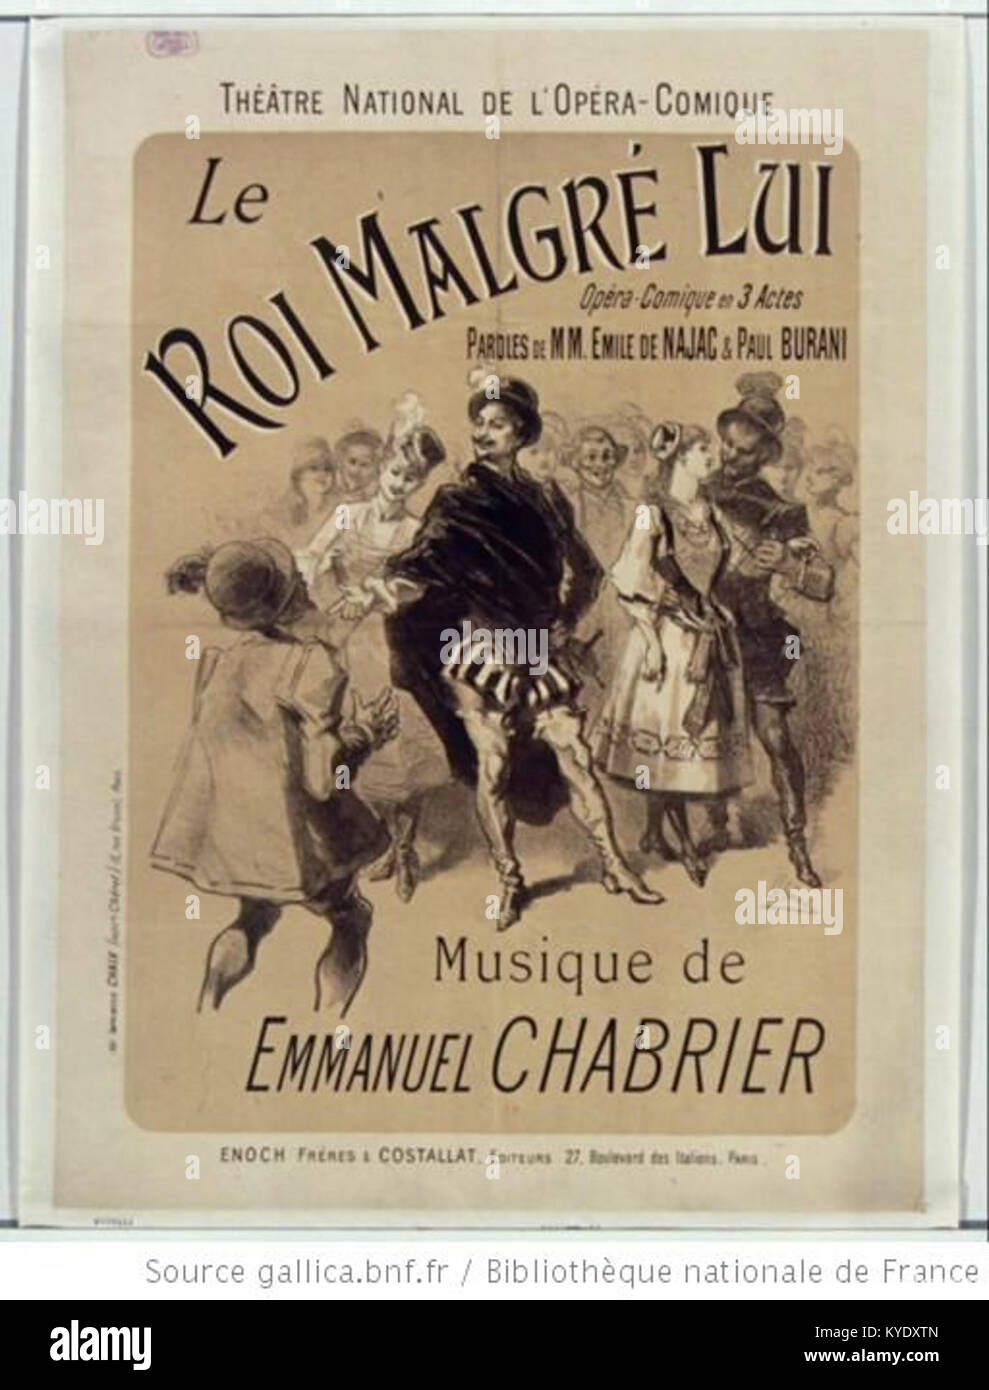 Théâtre national de l'Opéra-Comique. Le Roi malgré lui. Musique de Emmanuel Chabrier. Affiche Jules Chéret Stock Photo